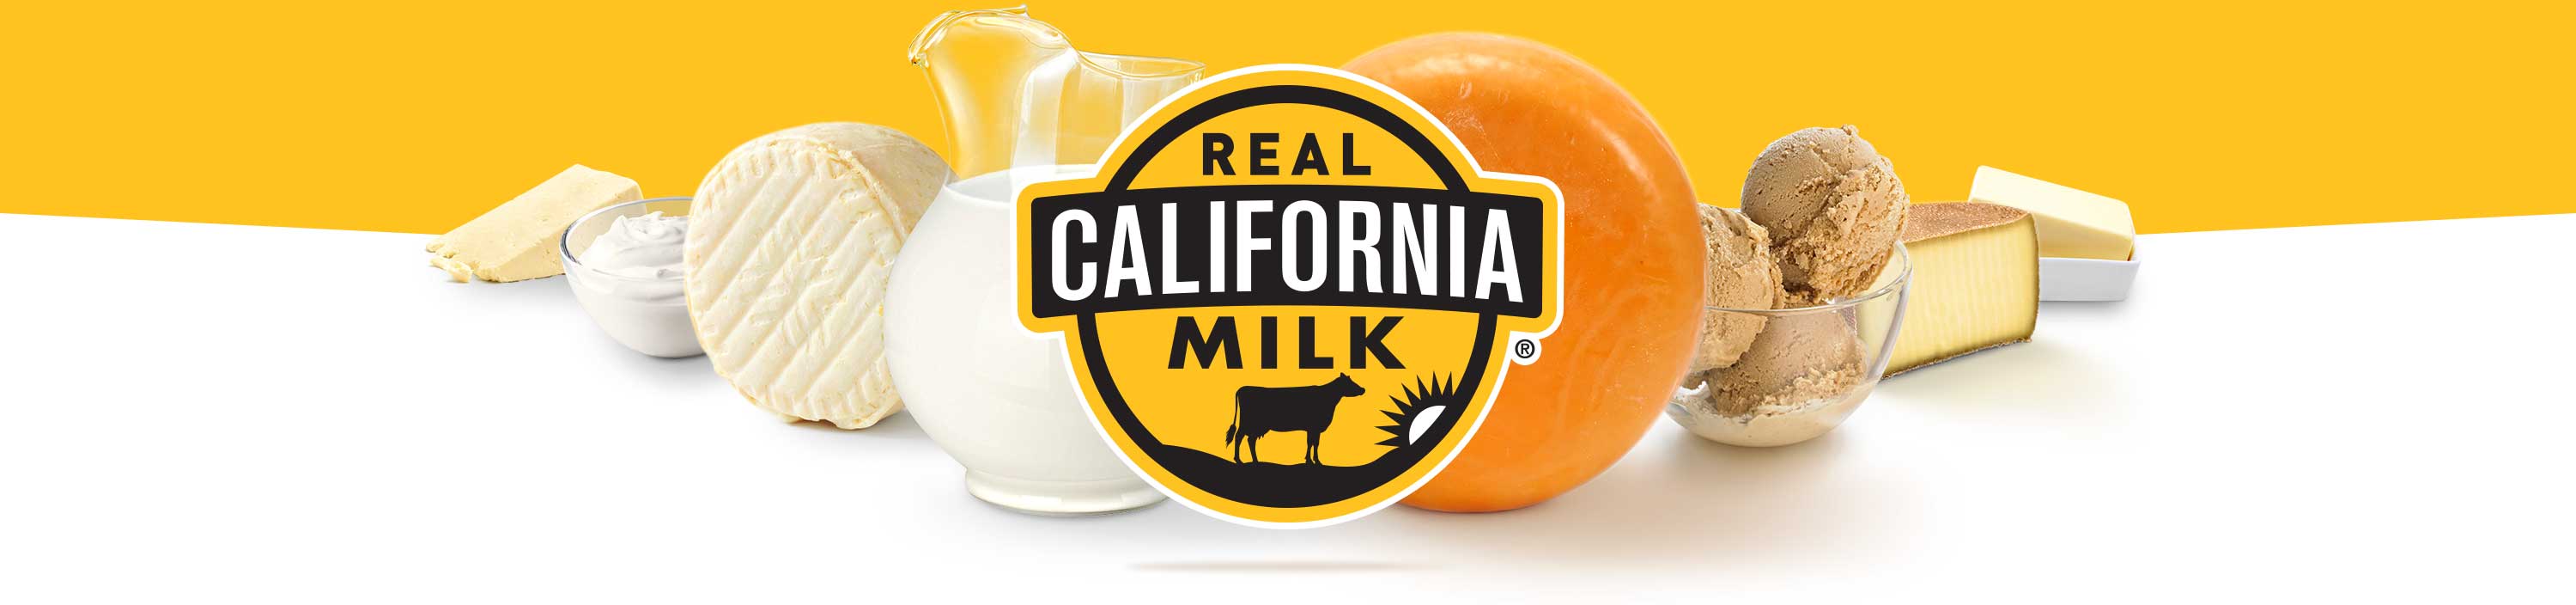 California Milk